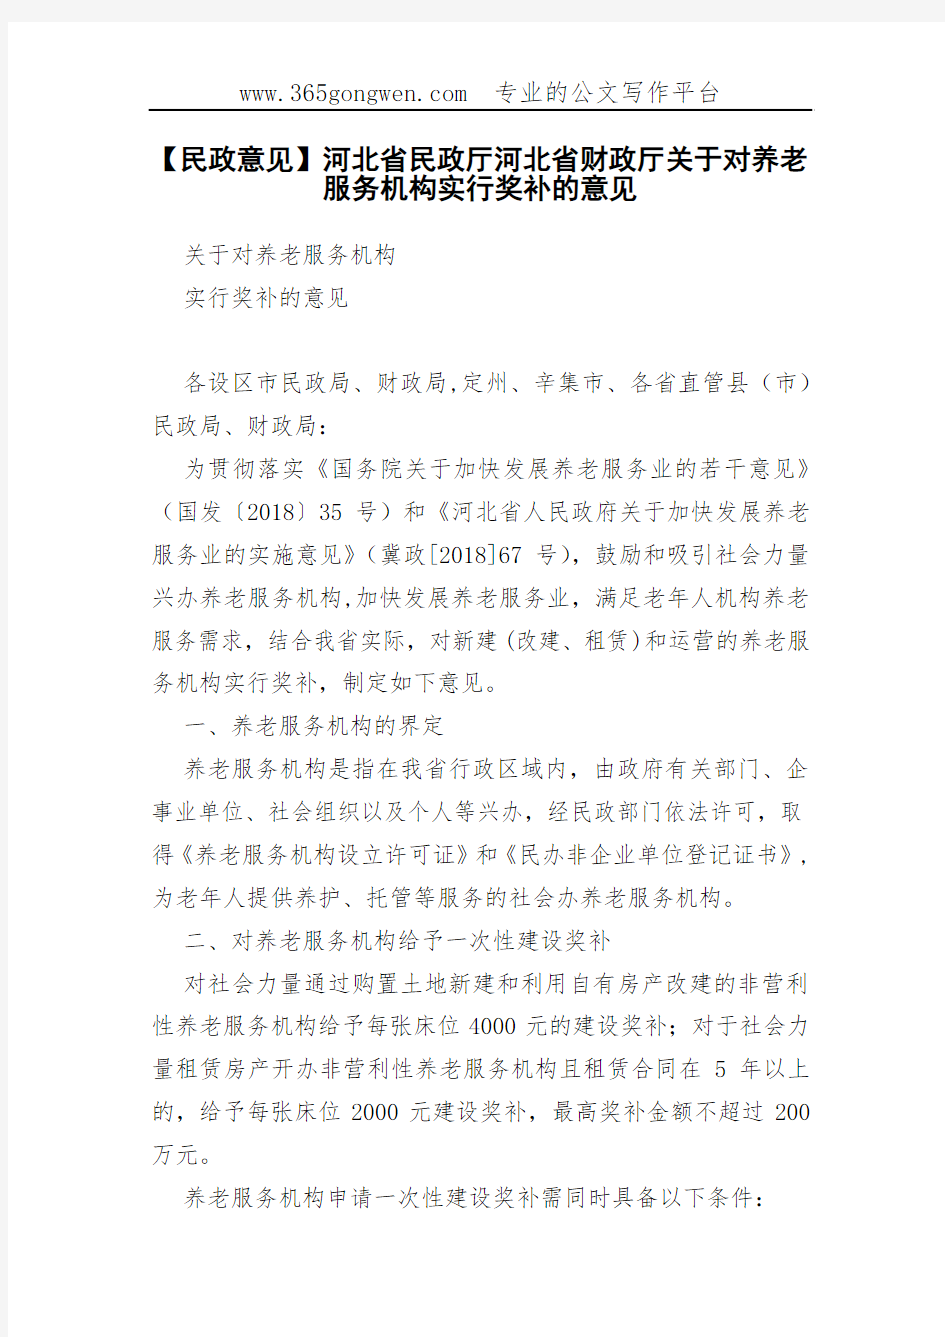 【民政意见】河北省民政厅河北省财政厅关于对养老服务机构实行奖补的意见